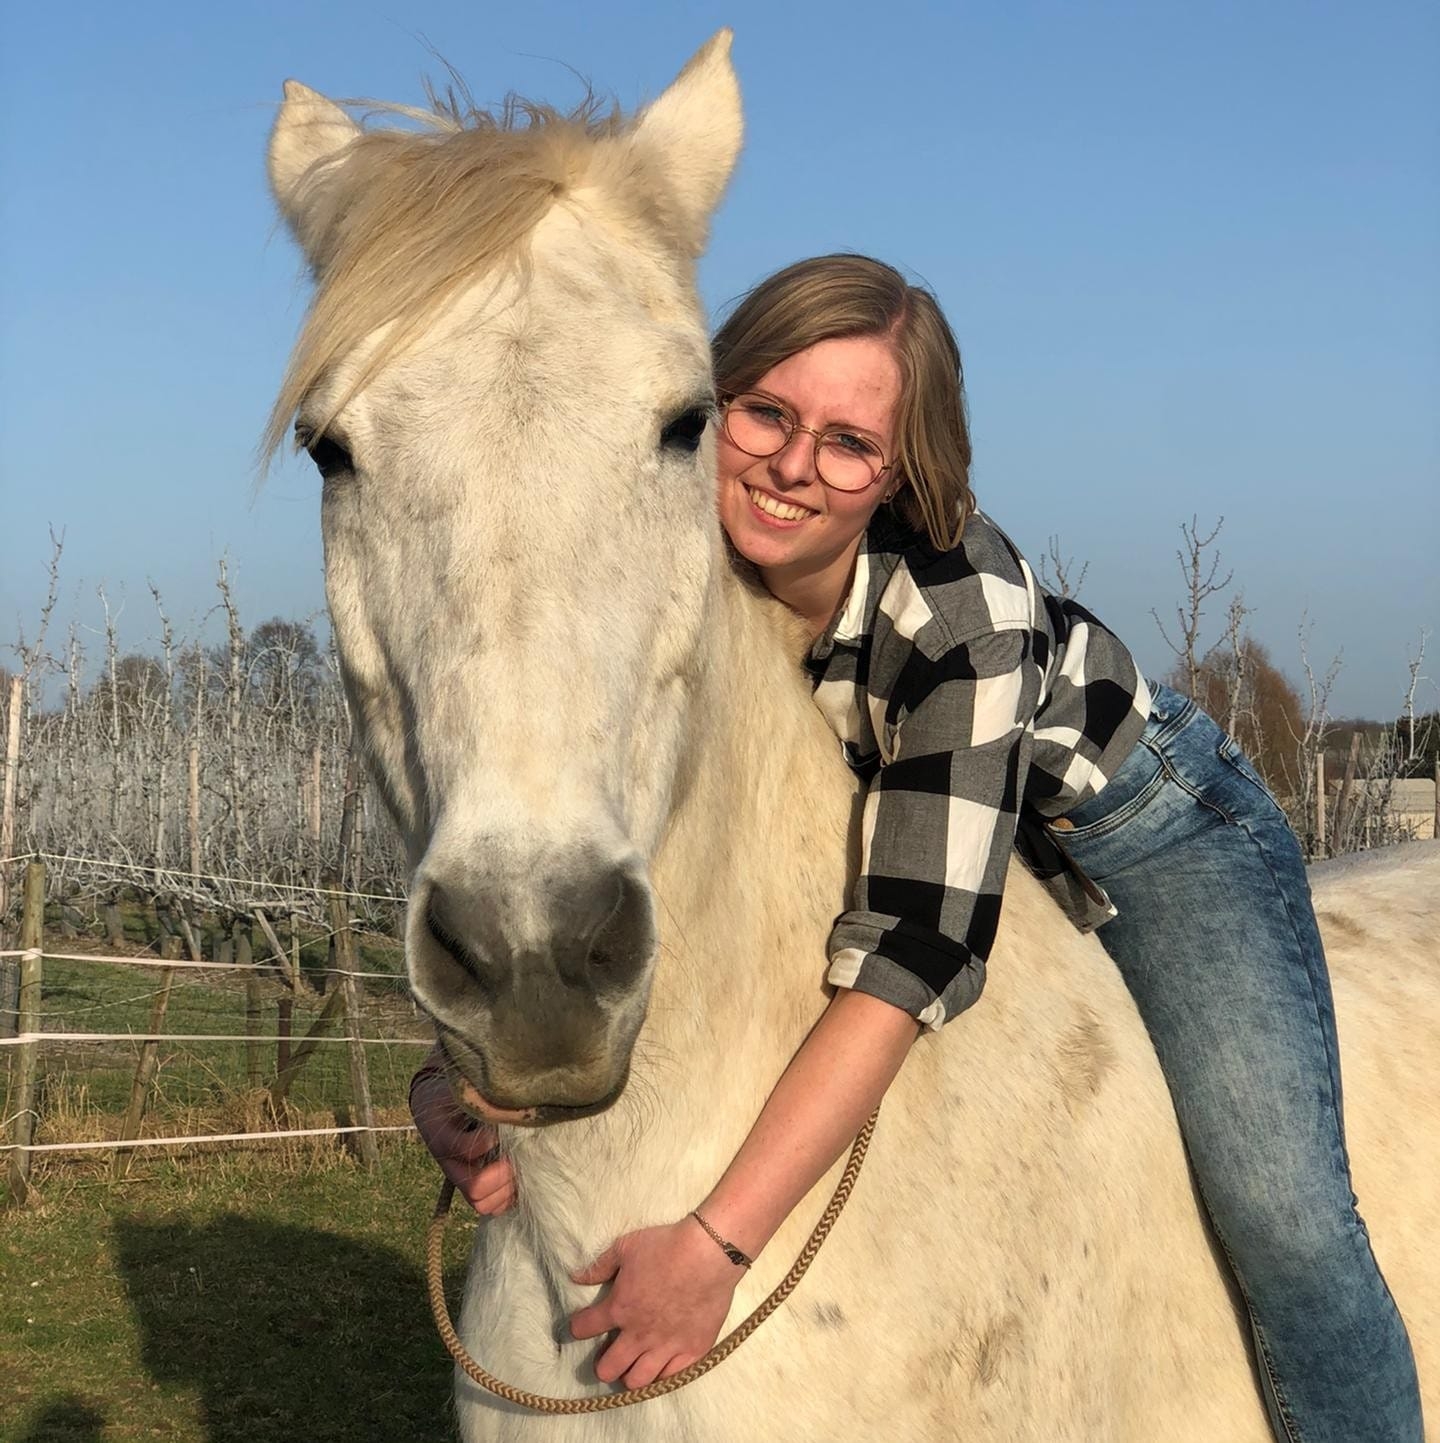 Rebecca's paard sterft na hevig vuurwerk: "Ik ben mijn grootste plezier voorgoed kwijt"